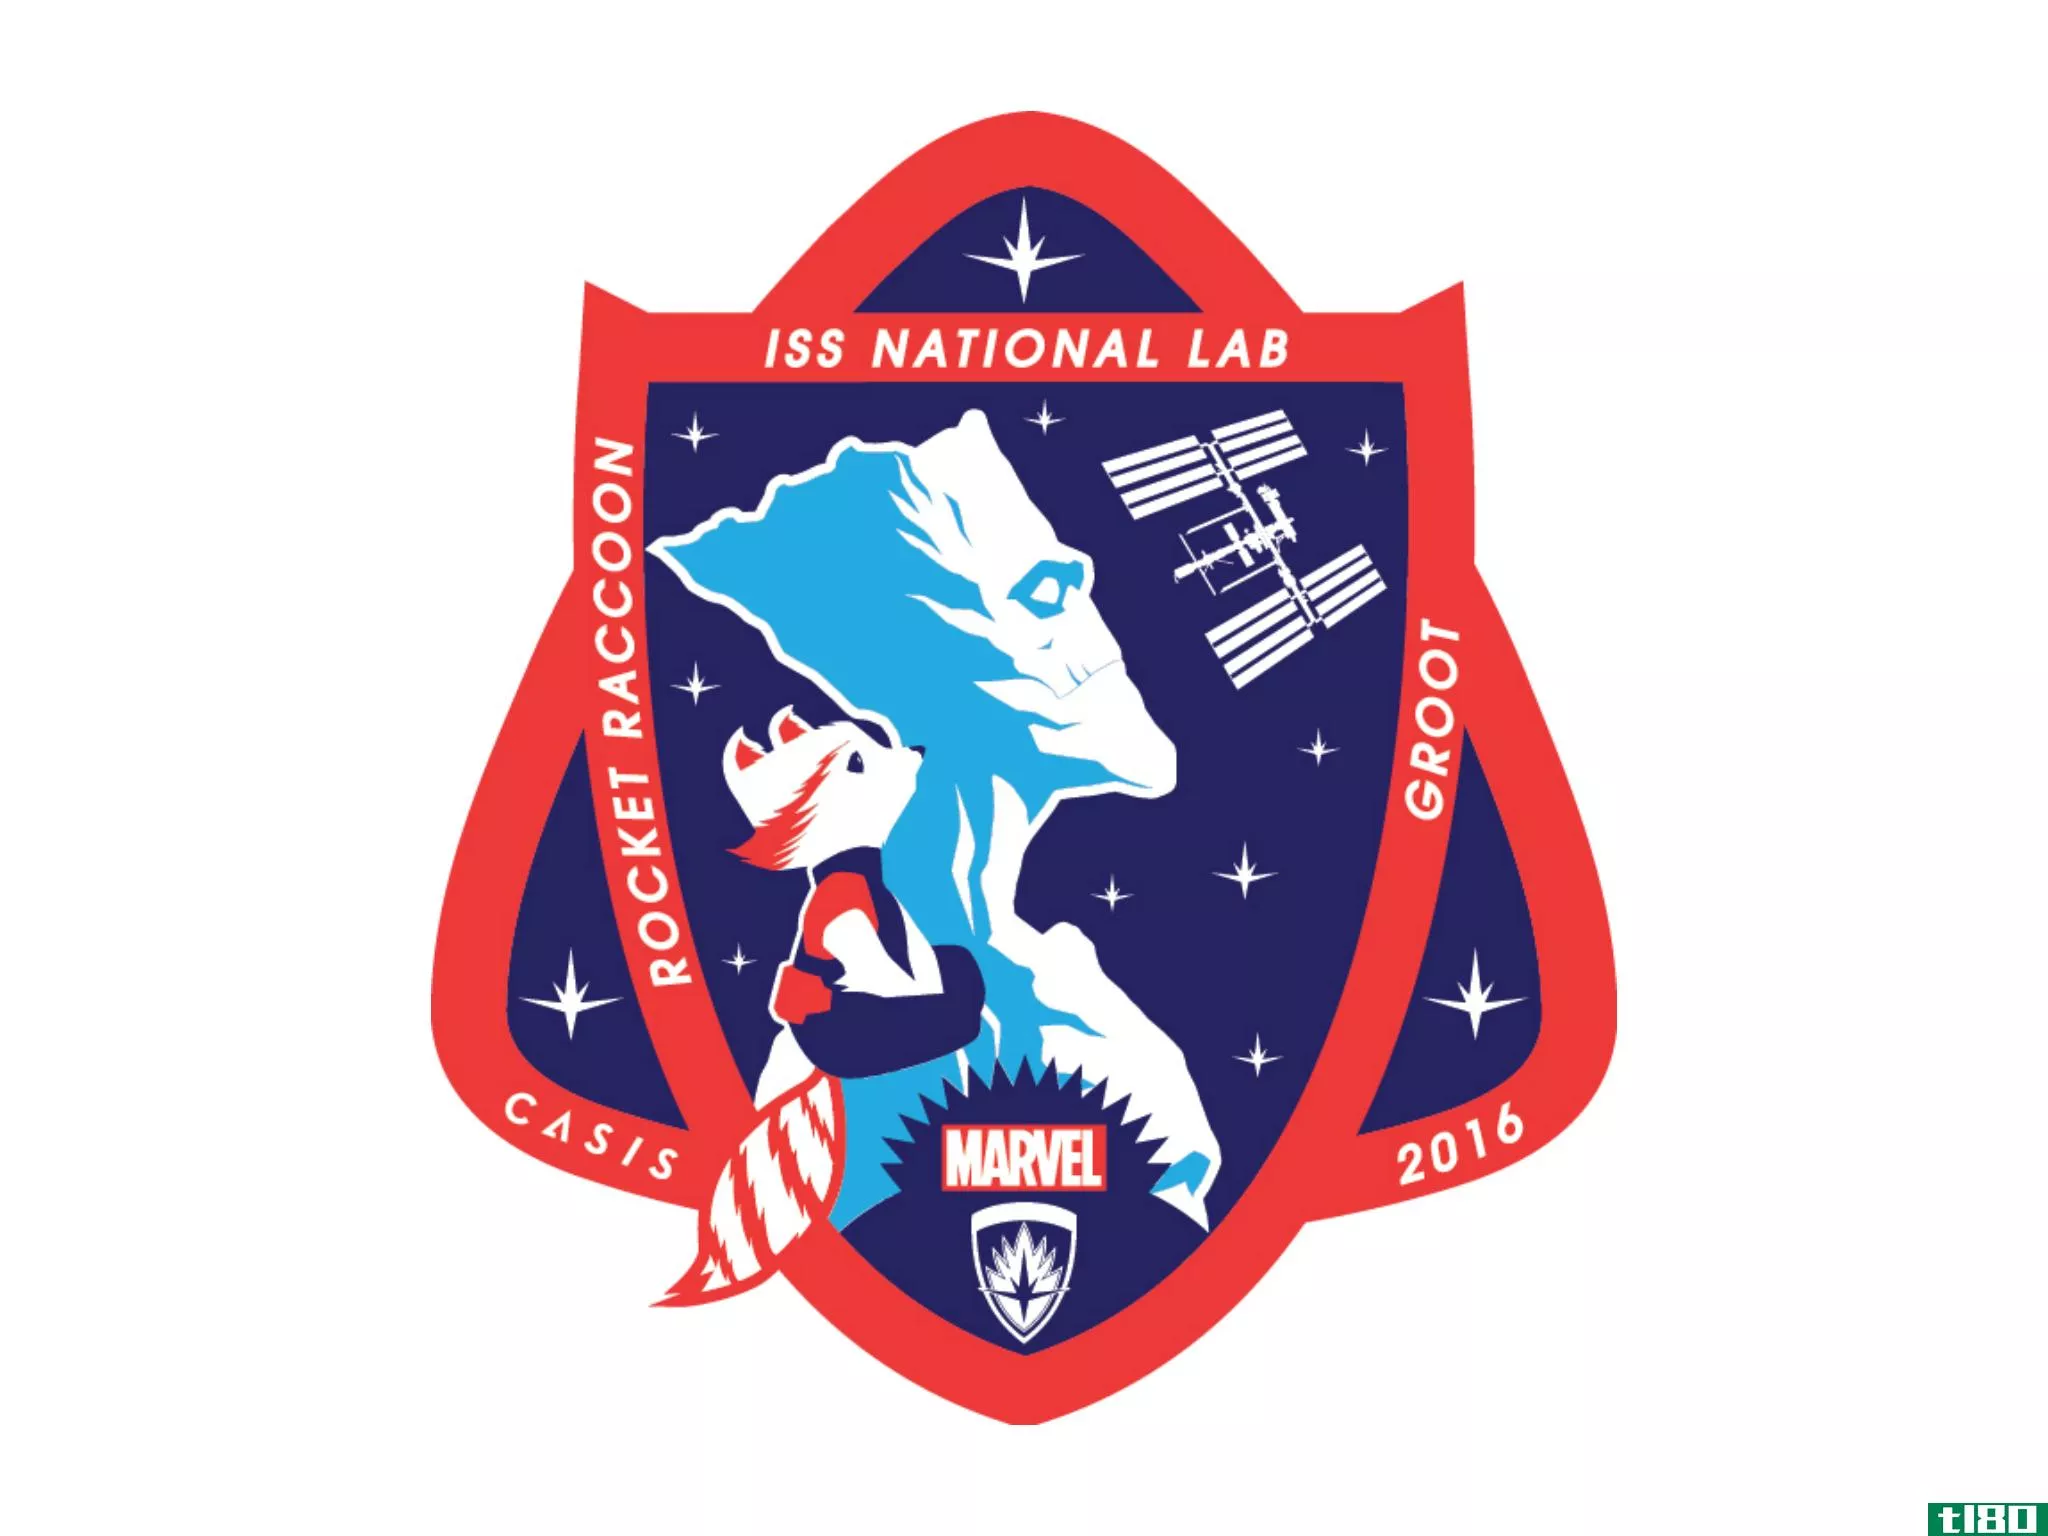 格罗特和火箭浣熊是今年空间站实验室正式补丁的明星